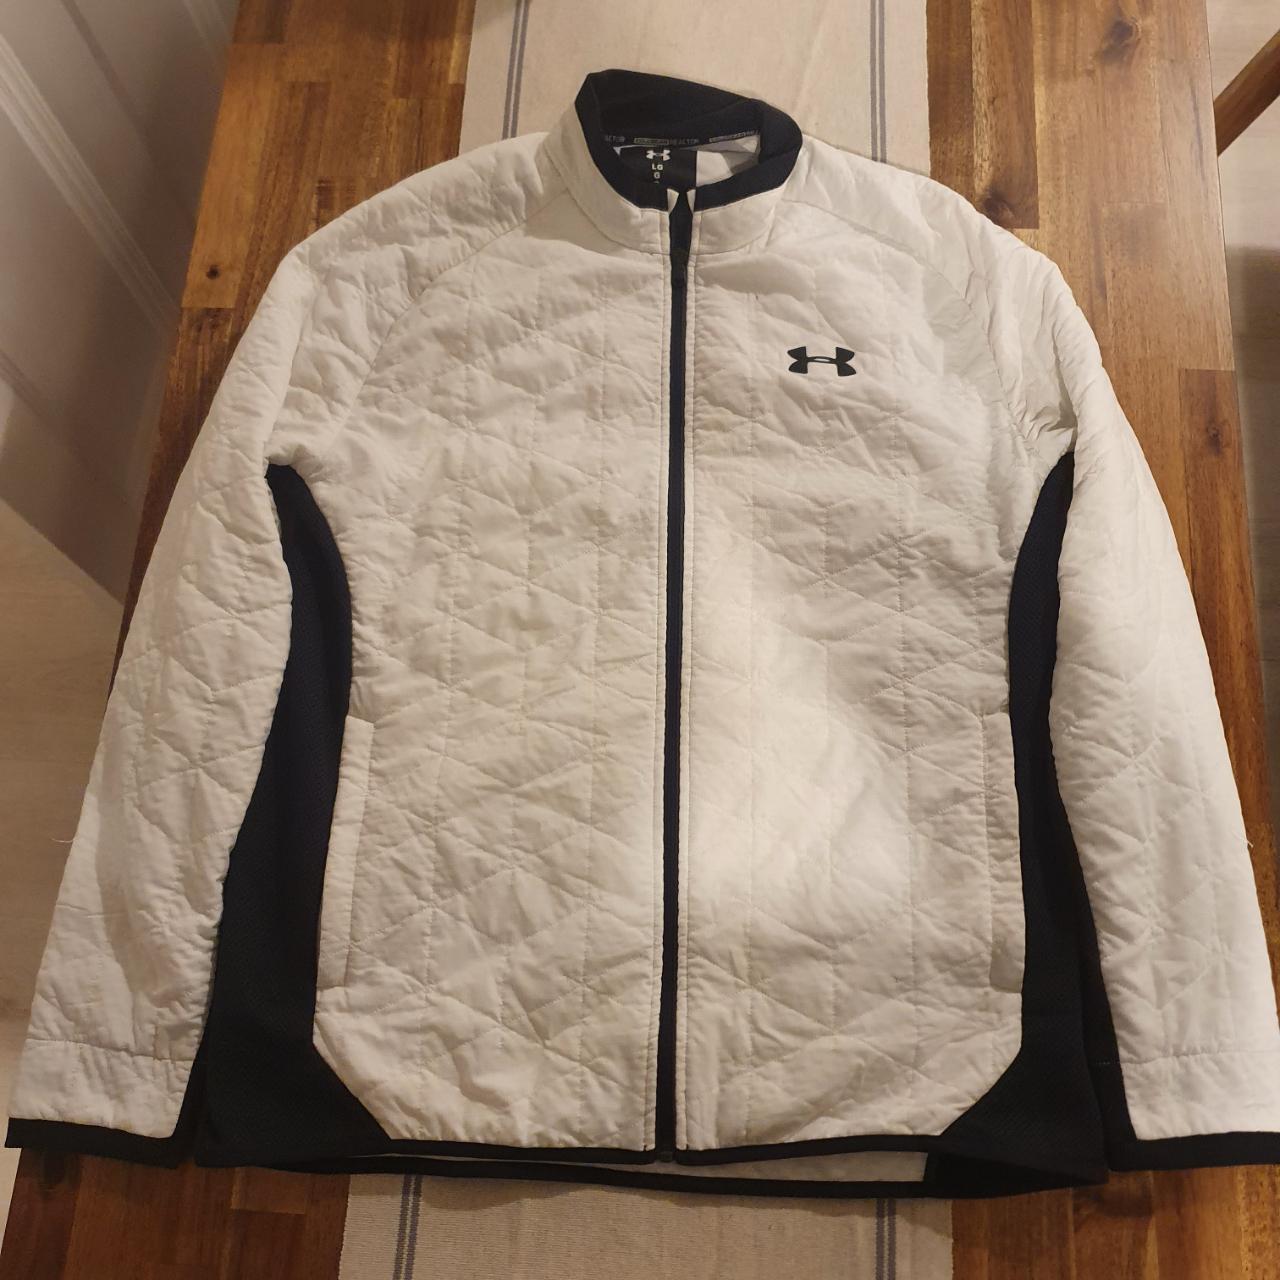 Under Armour Golf Jacket Colour: White Size:... - Depop